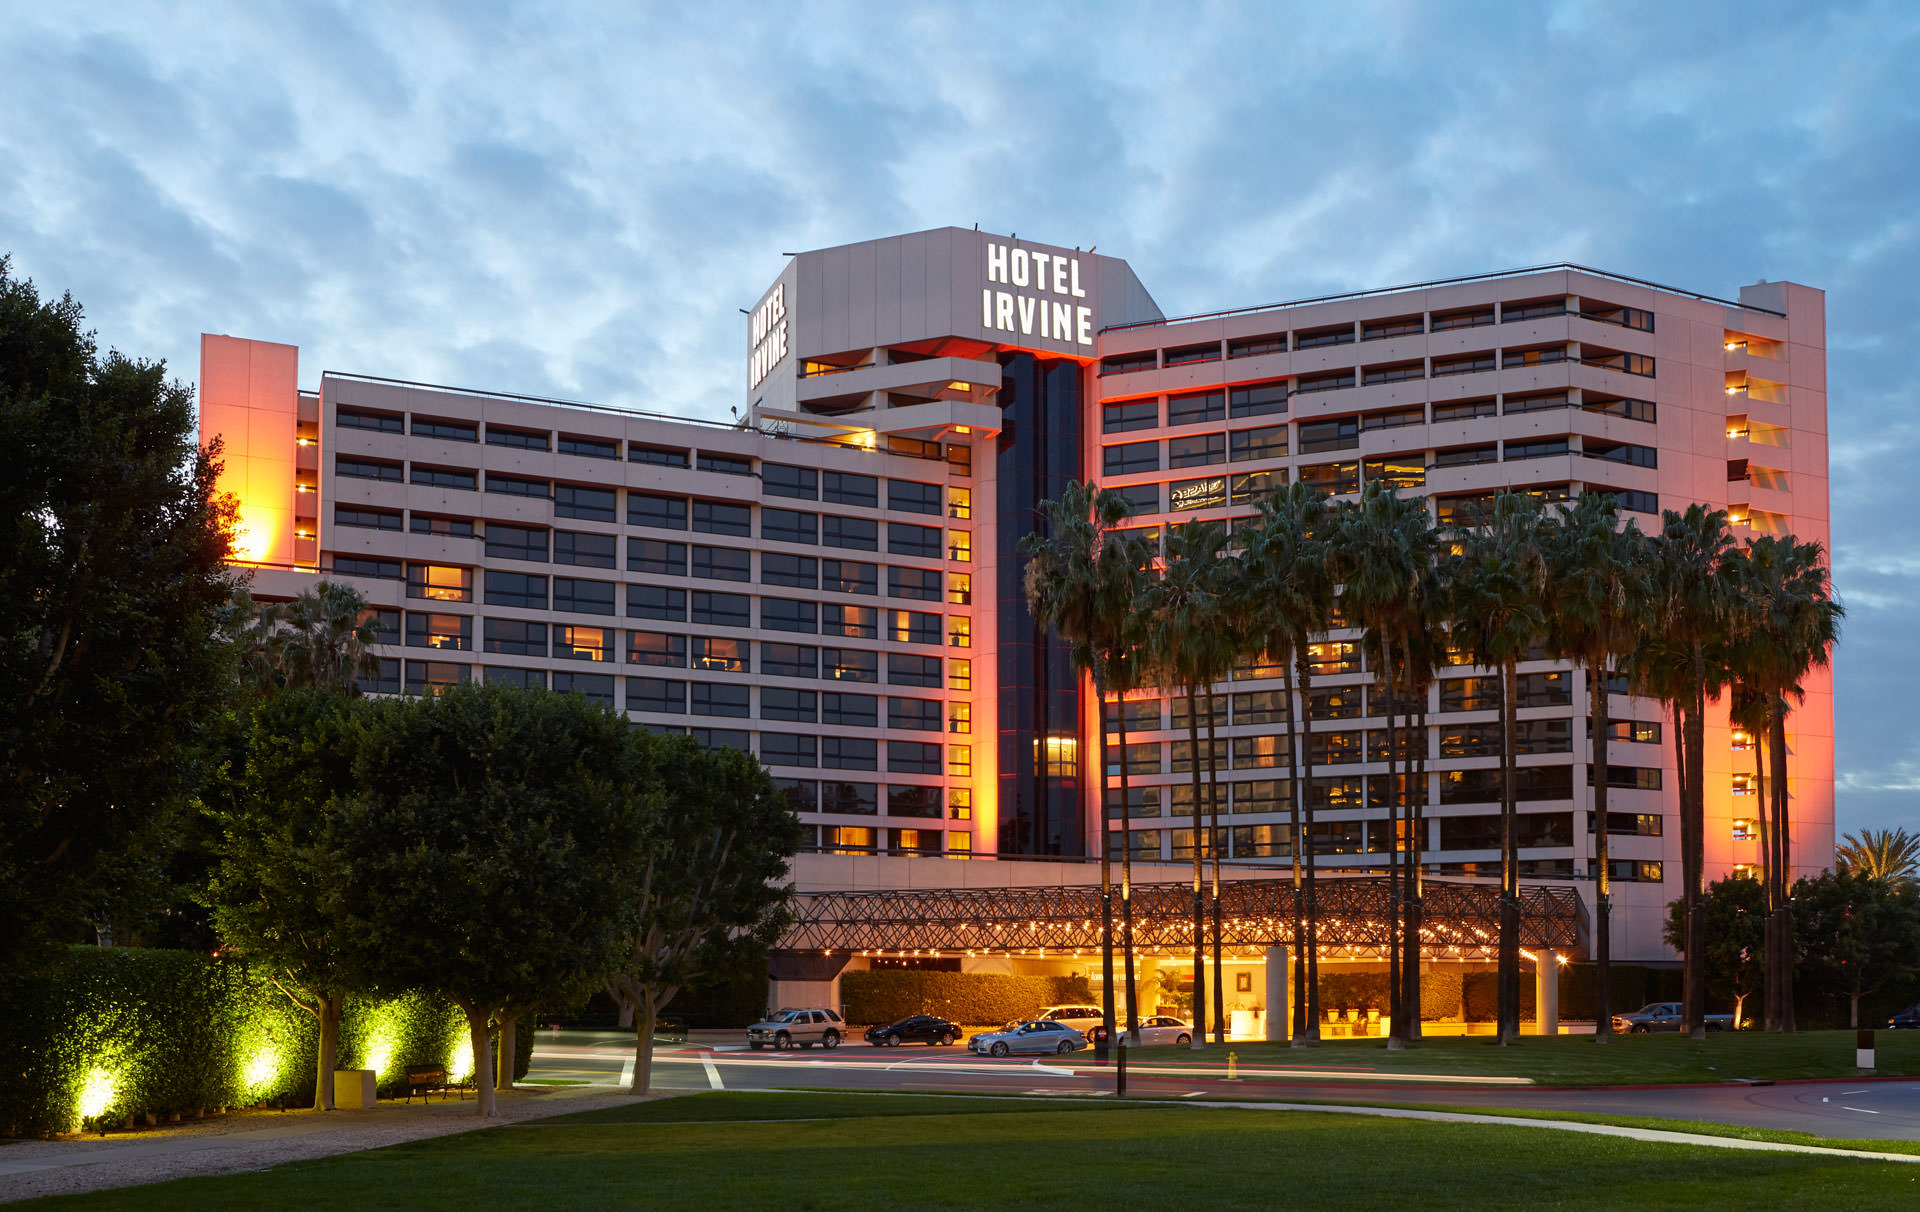 Hotel Irvine | CCIS - California Consortium for Independent Study